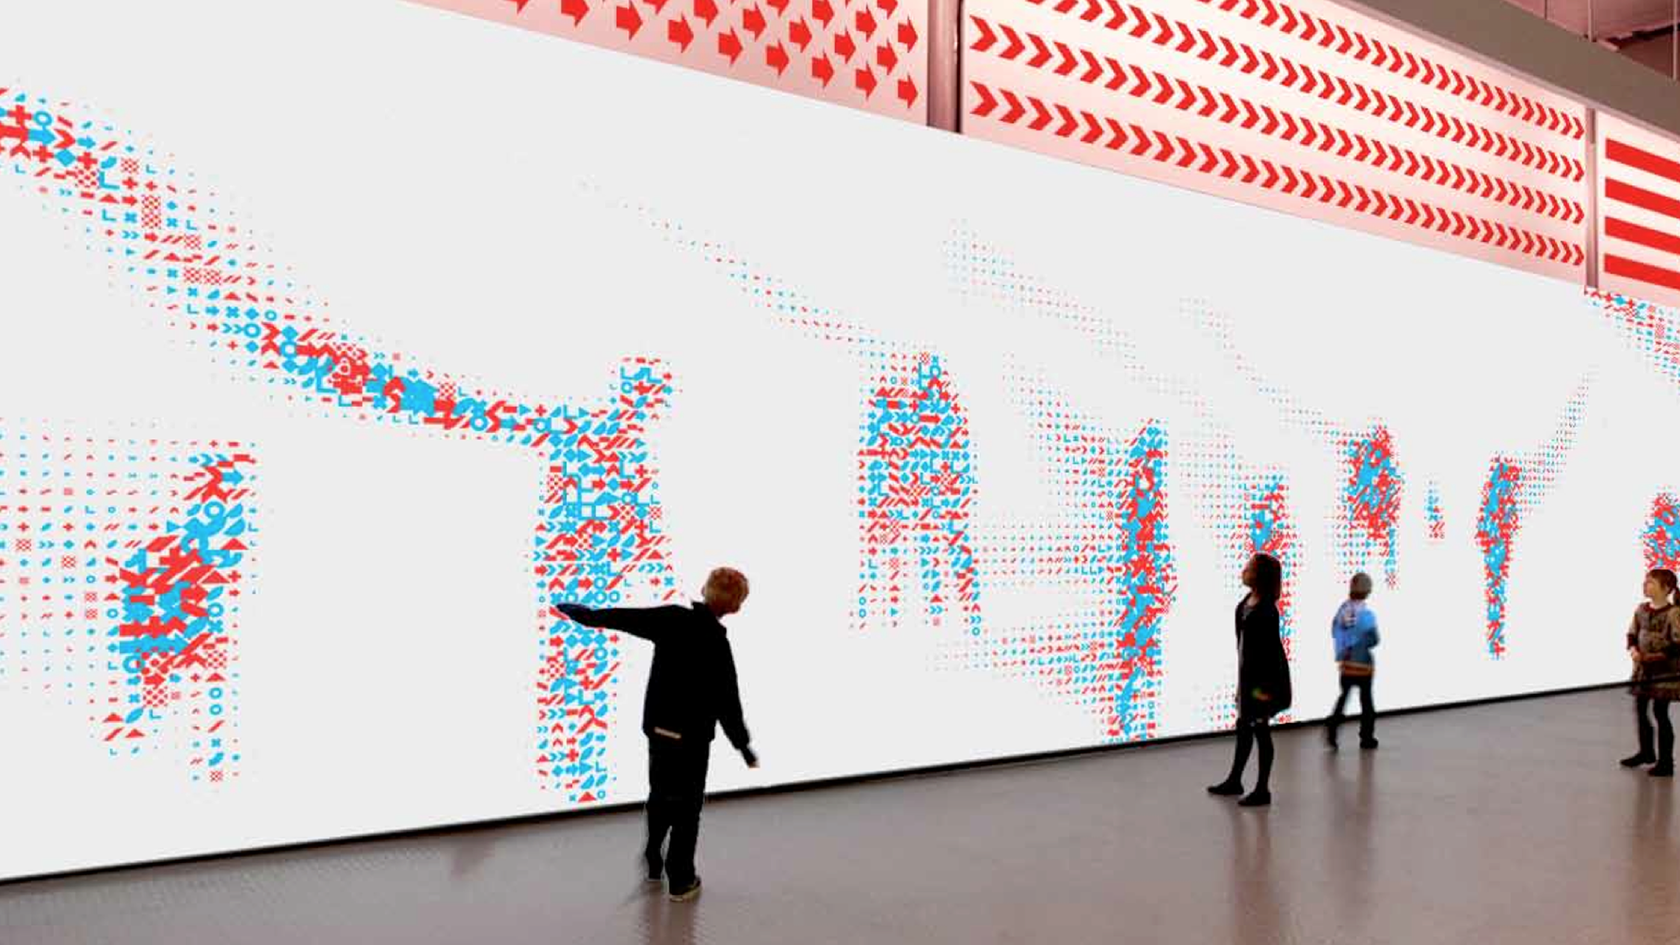 Www art media. Интерактивные инсталляции. Интерактивная стена. Интерактивные инсталляции в музее. Проекционные инсталляции.